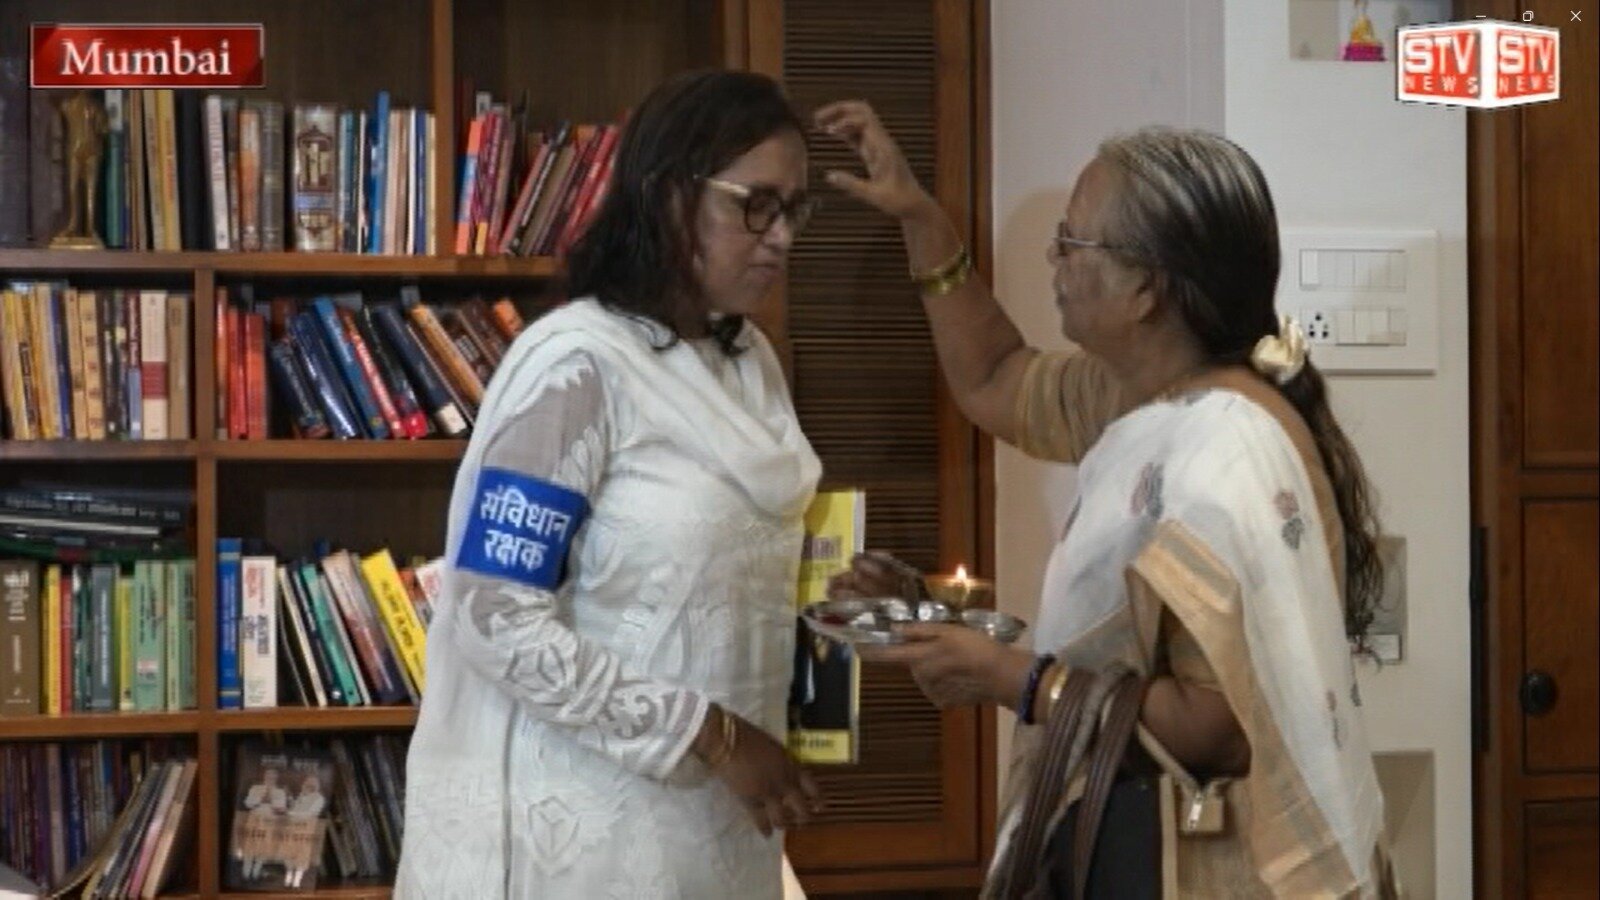 STV News | भारतीय संविधान रक्षक l कांग्रेस उम्मीदवार वर्षा गायकवाड अपनी मां के साथ...